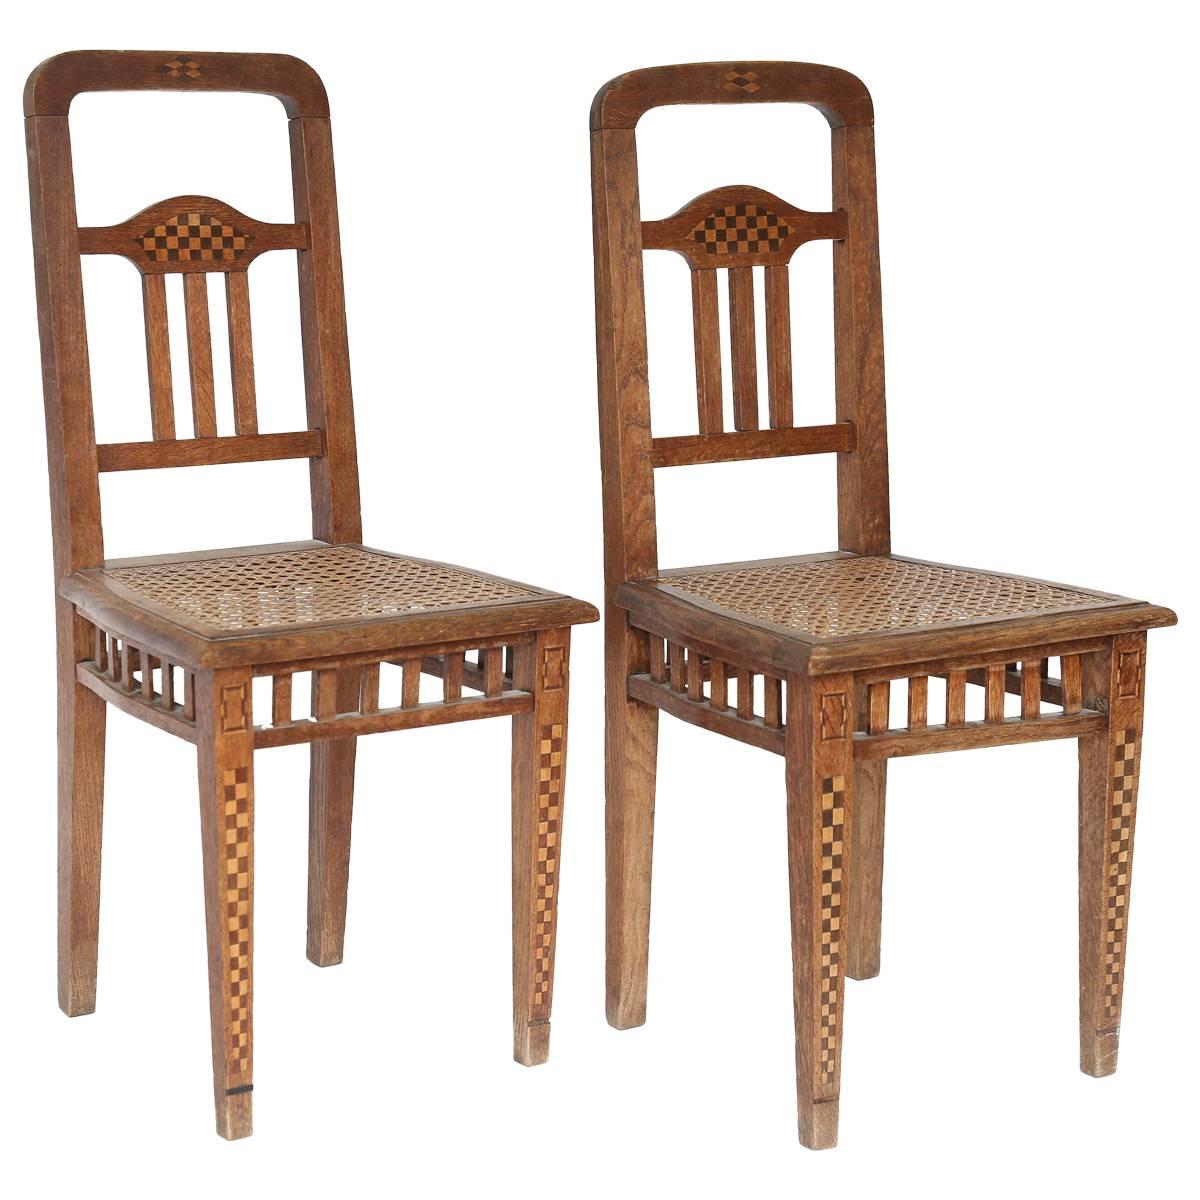 Pair of Children's Chairs